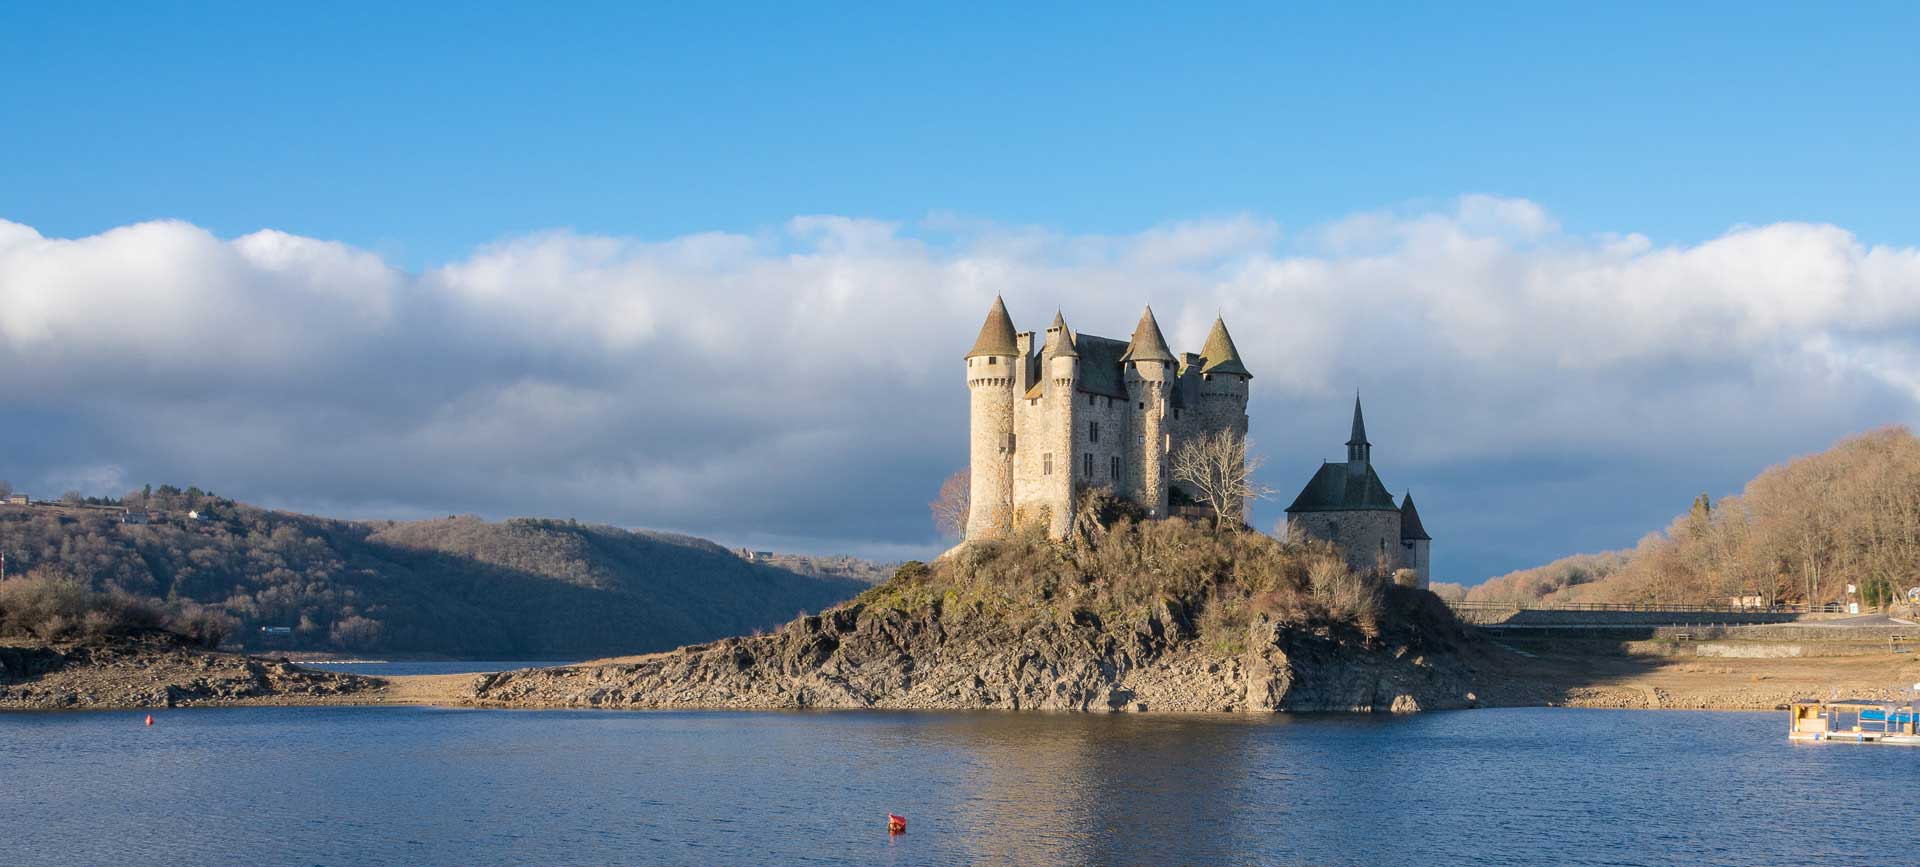 Château de Val dans le Cantal en région Auvergne-Rhône-Alpes